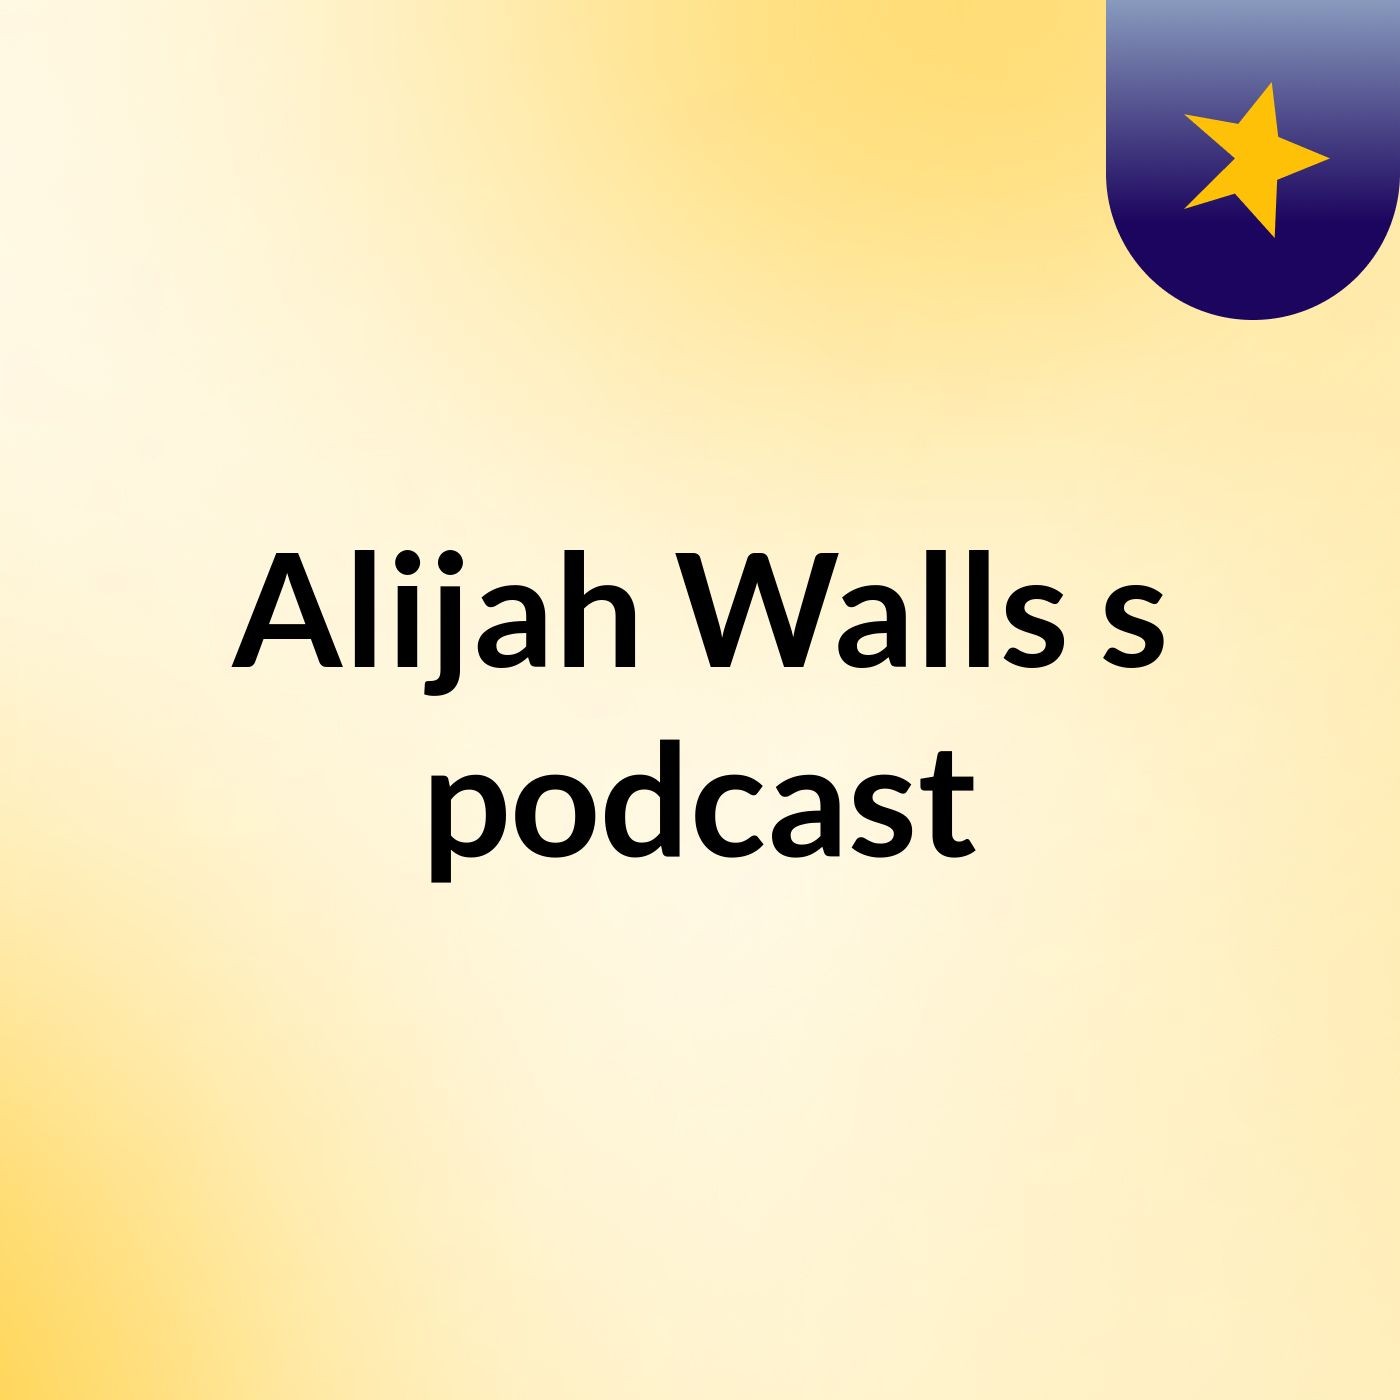 Episode 3 - Alijah Walls's podcast